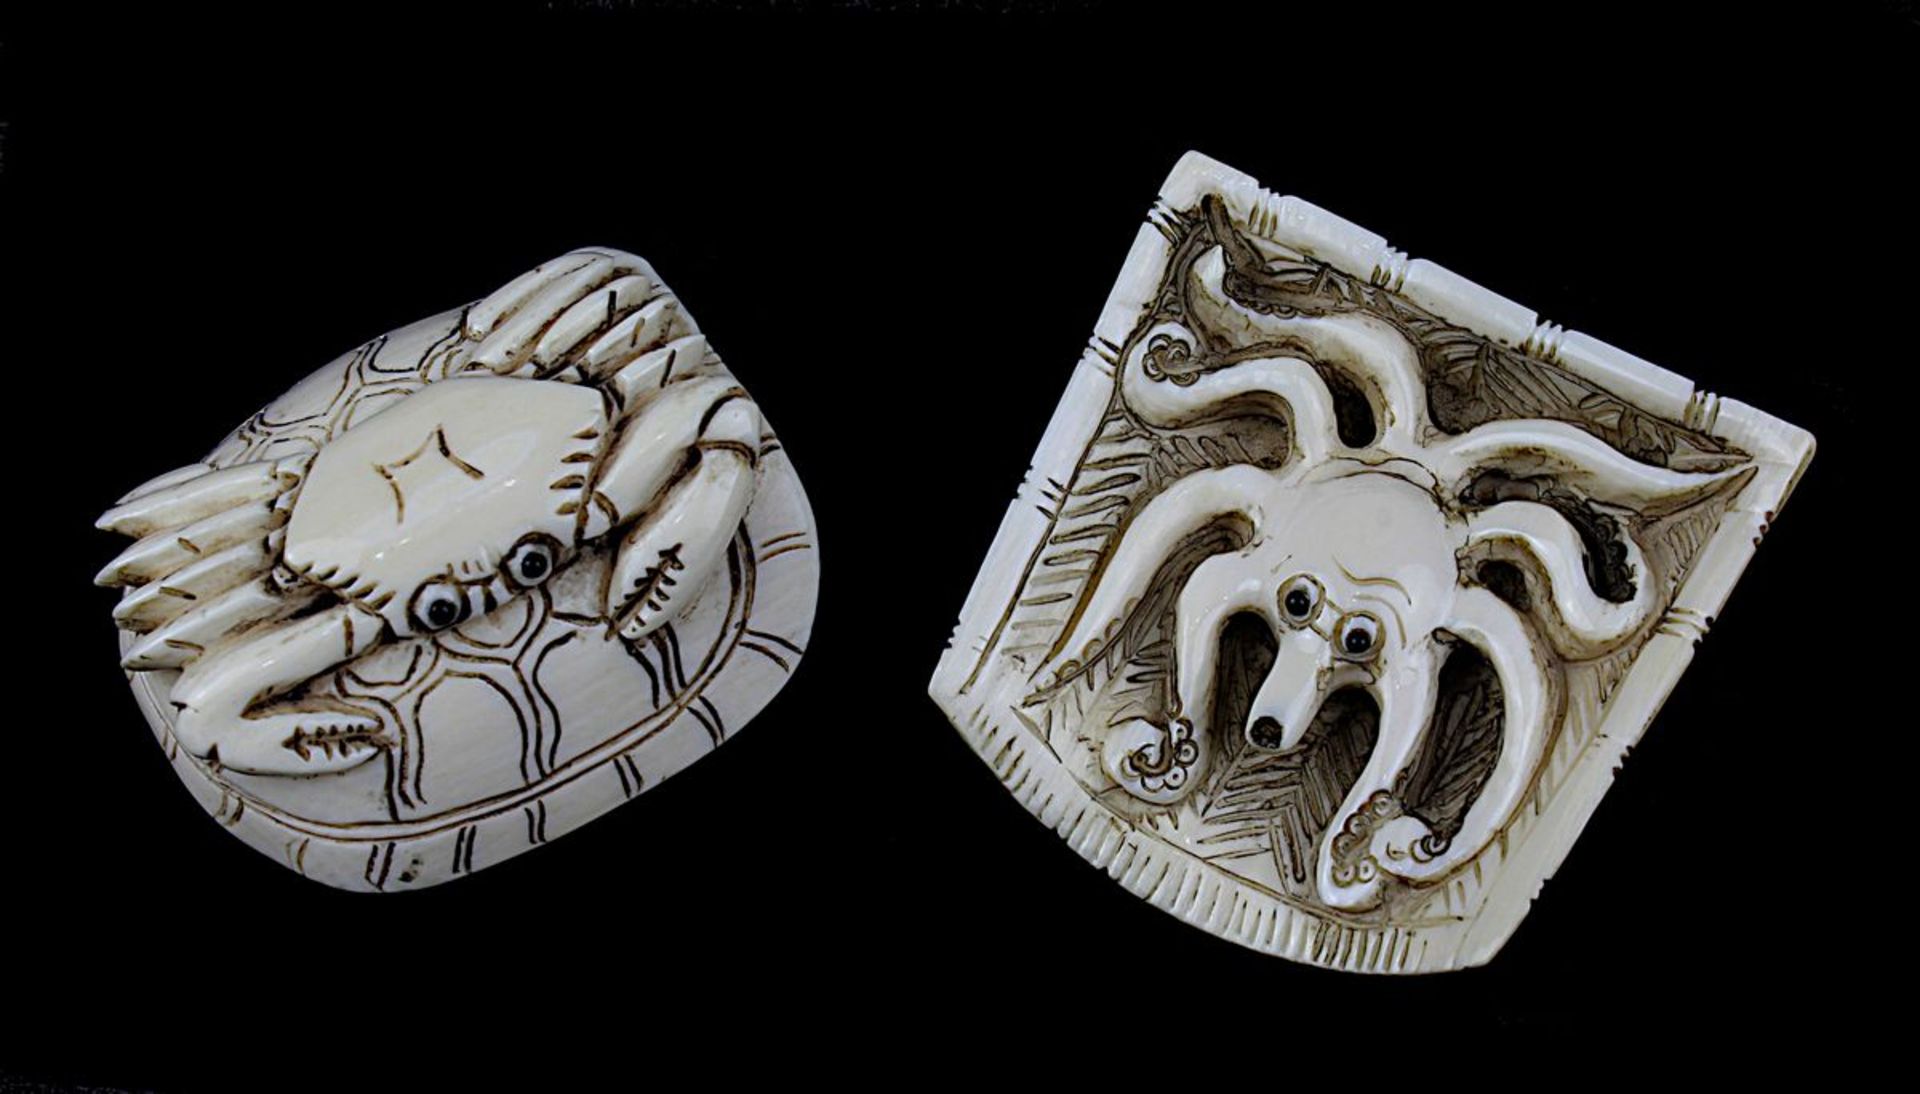 2 japanische Netsukes aus Elfenbein, Oktopus und Krabbe auf Schildkröte, handgeschnitzte Figuren,